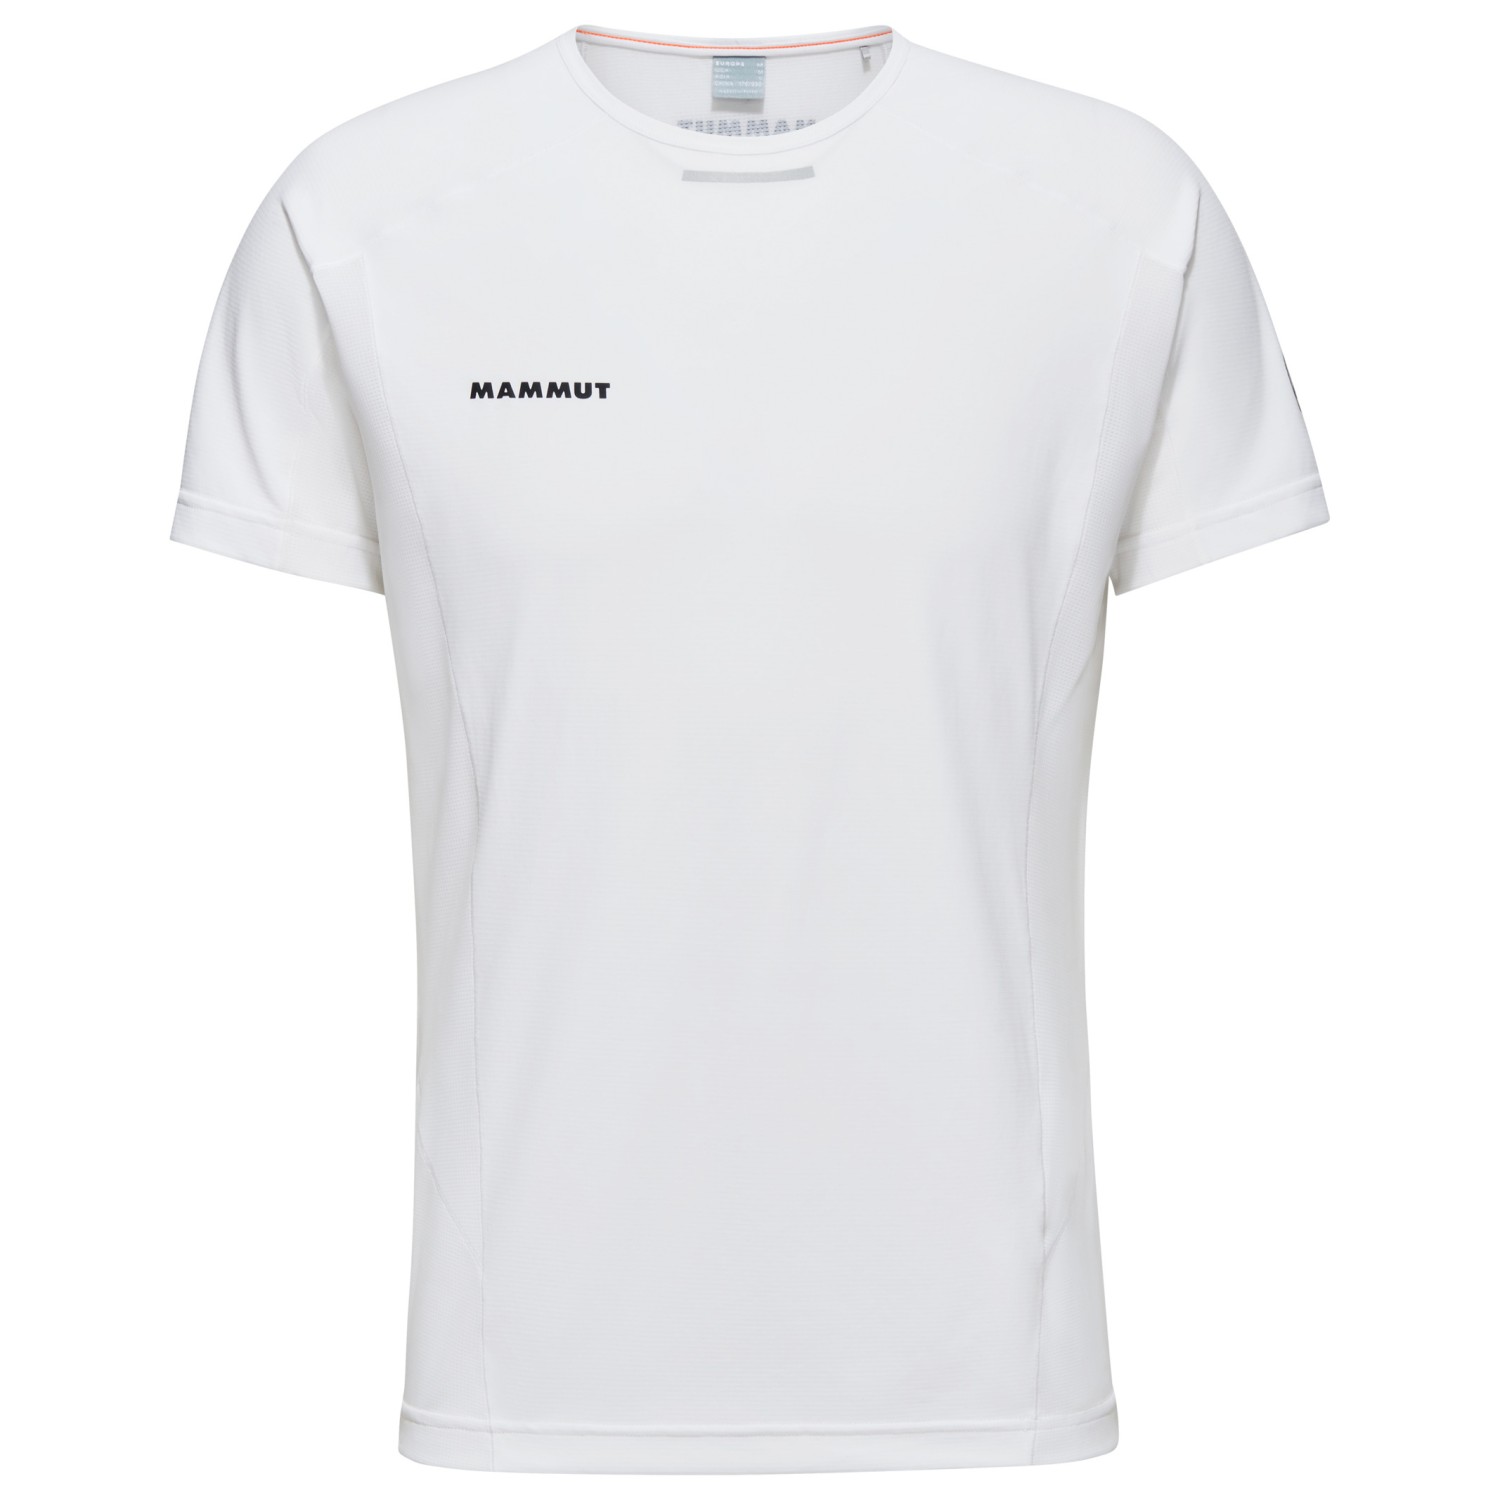 функциональная рубашка mammut aenergy fl t shirt цвет deep ice marine Функциональная рубашка Mammut Aenergy FL T Shirt, белый